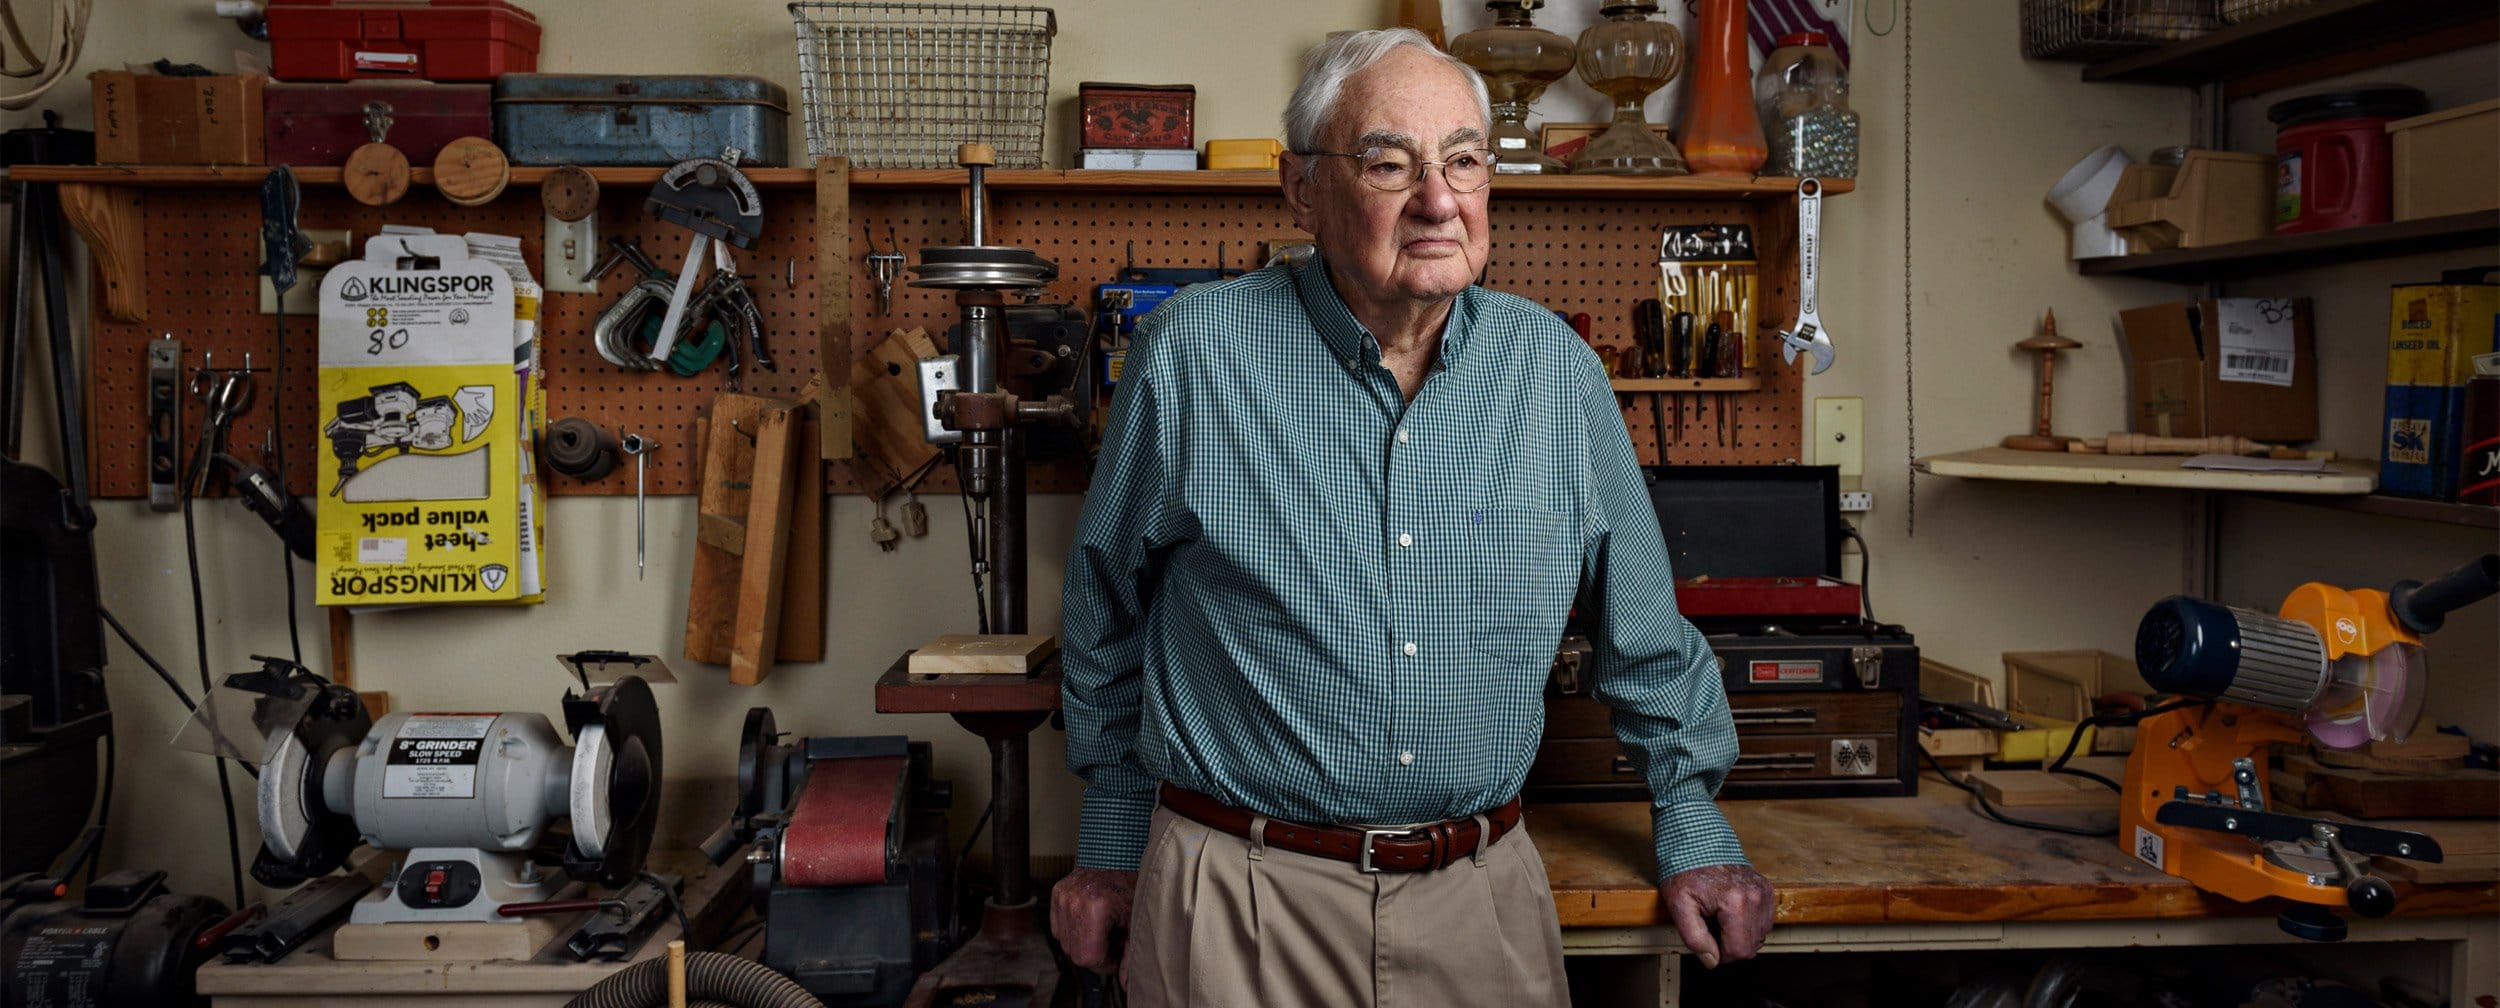 Dallas porrait artist photographs older man in wood shop in mckinney texas